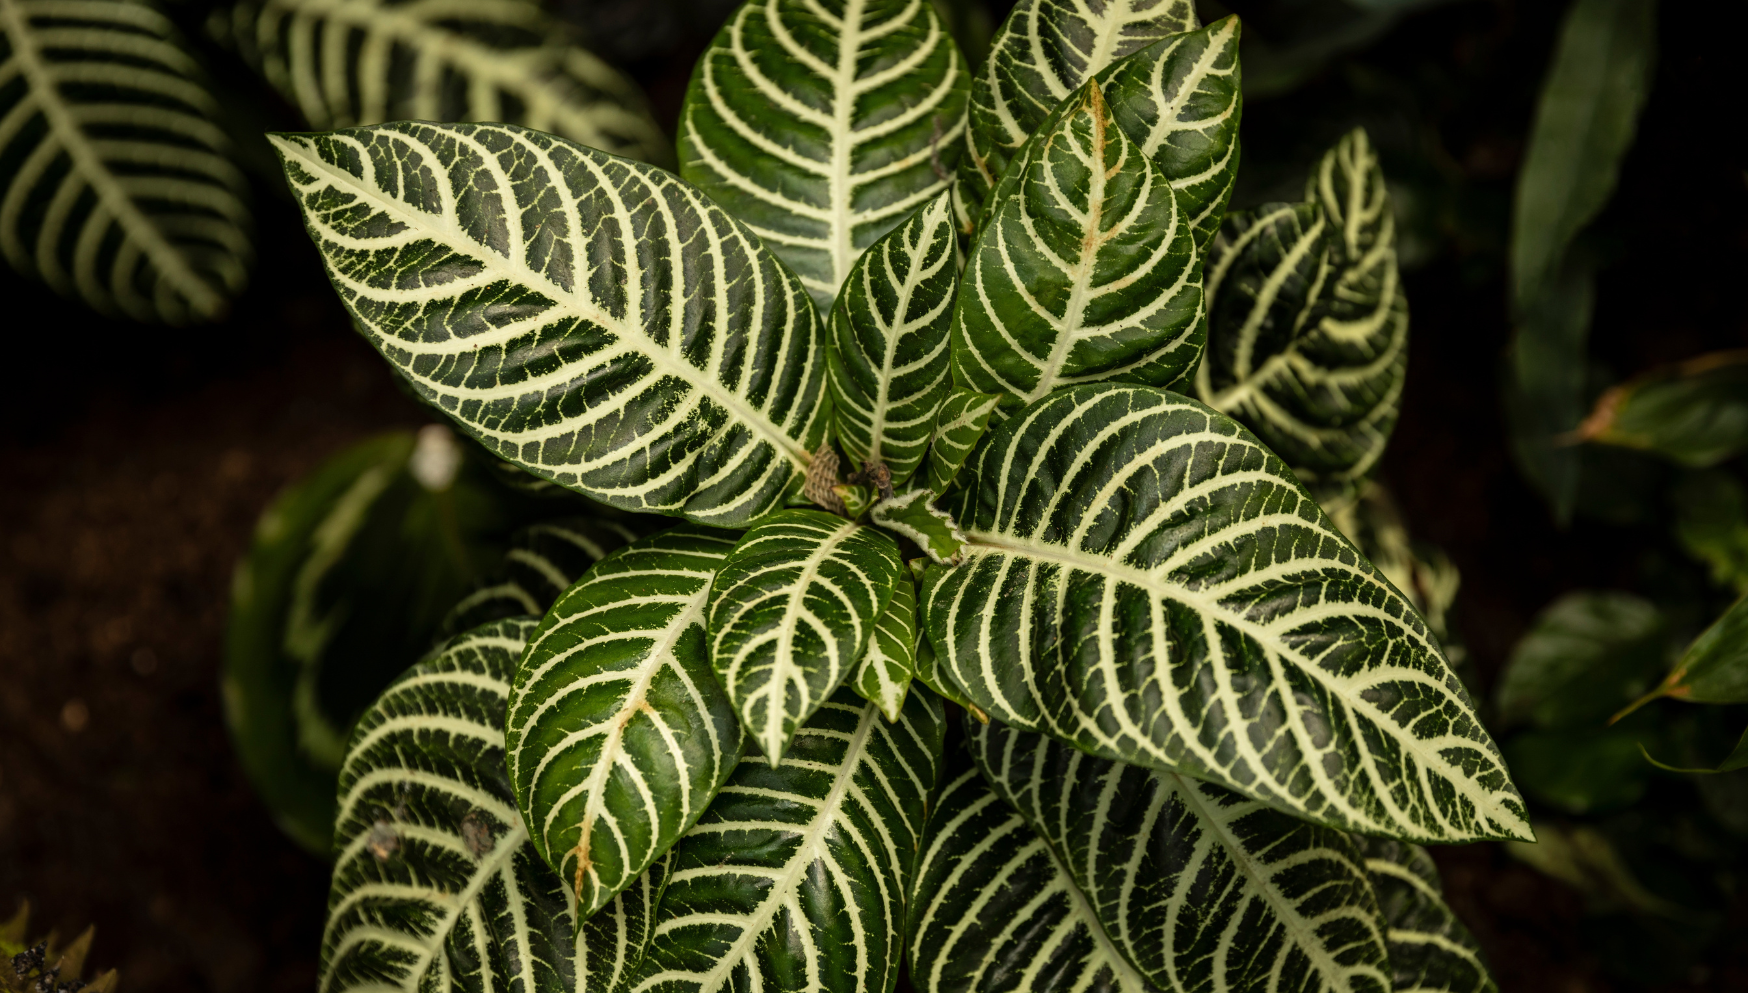 Aphelandra Zebraplant leaves